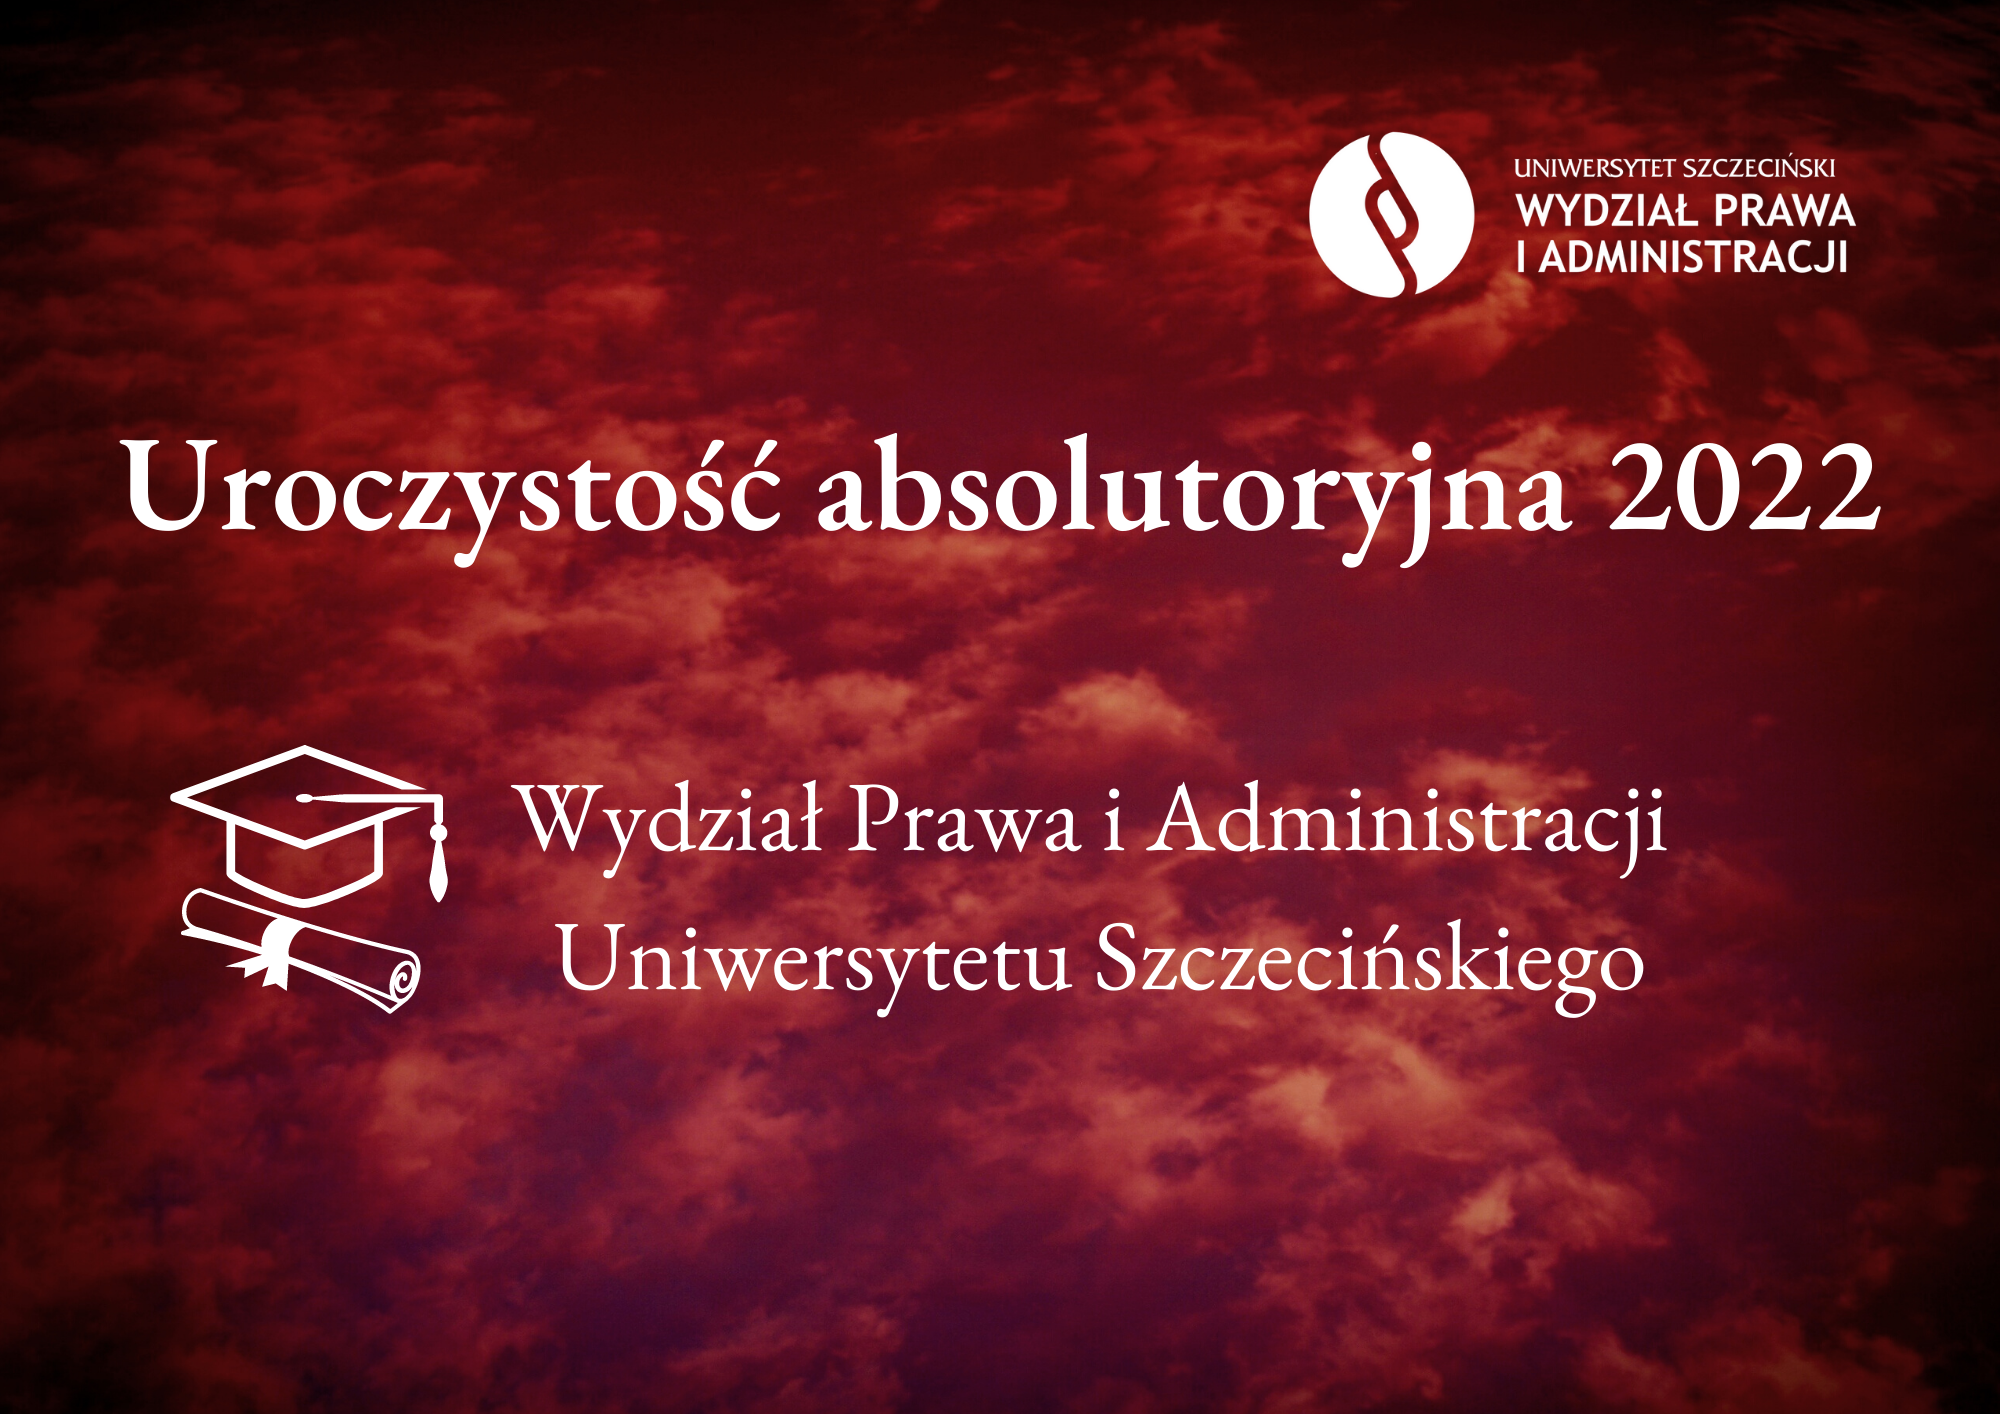 Przedłużenie rejestracji na uroczystość absolutoryjną 2022 na Wydziale Prawa i Administracji Uniwersytetu Szczecińskiego